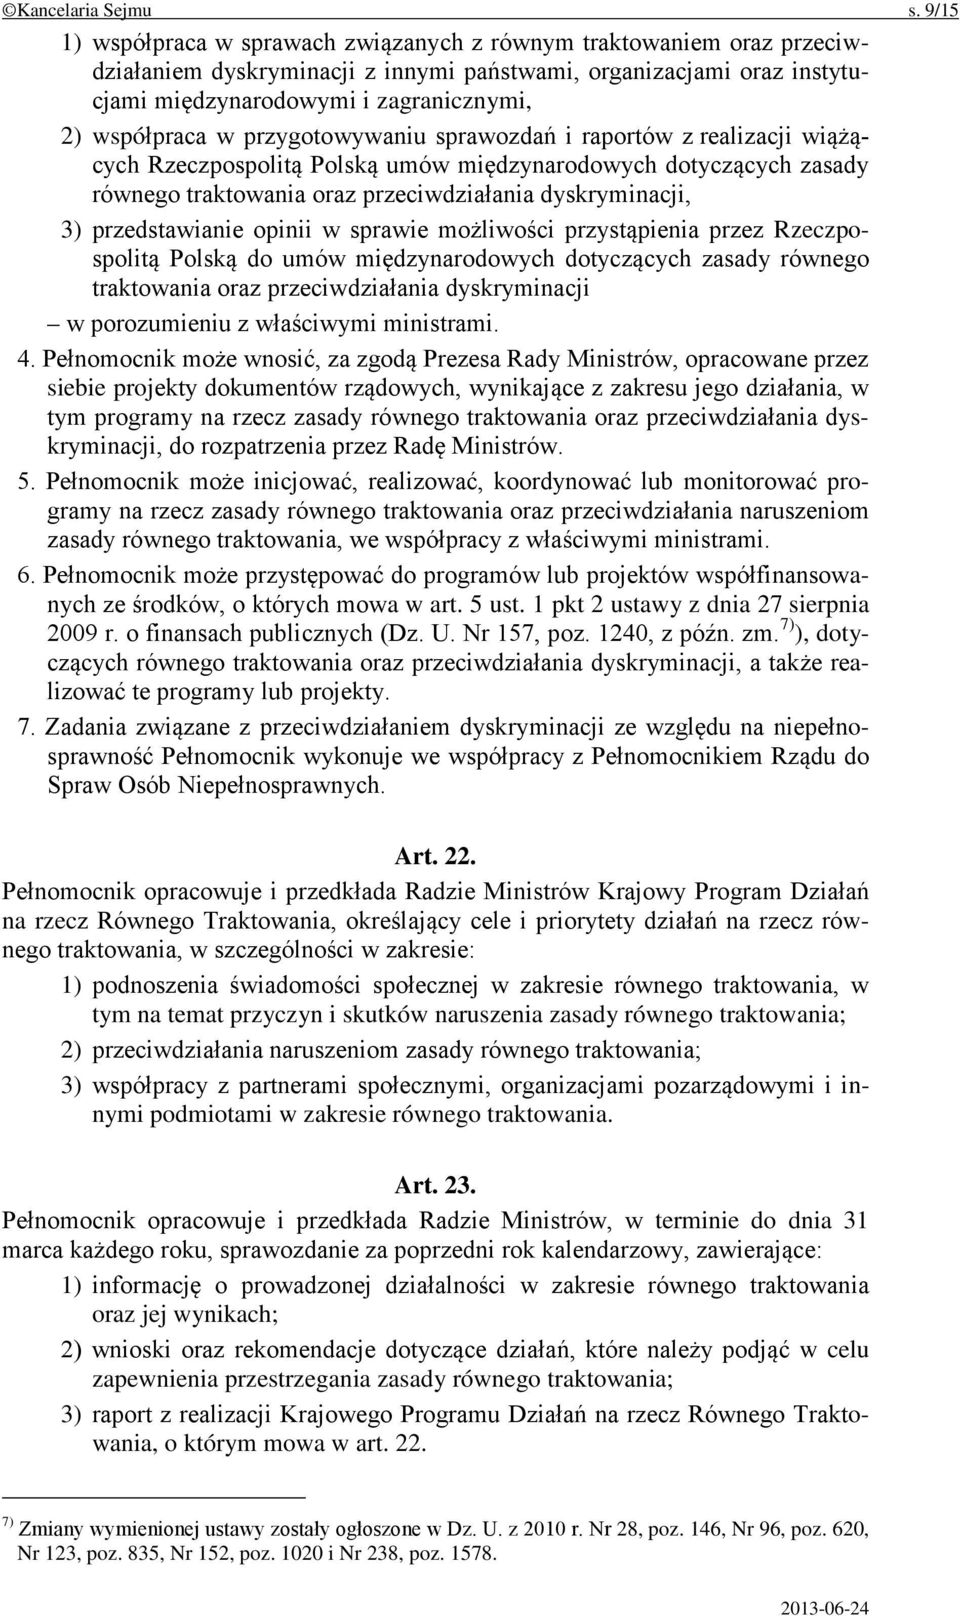 w przygotowywaniu sprawozdań i raportów z realizacji wiążących Rzeczpospolitą Polską umów międzynarodowych dotyczących zasady równego traktowania oraz przeciwdziałania dyskryminacji, 3)